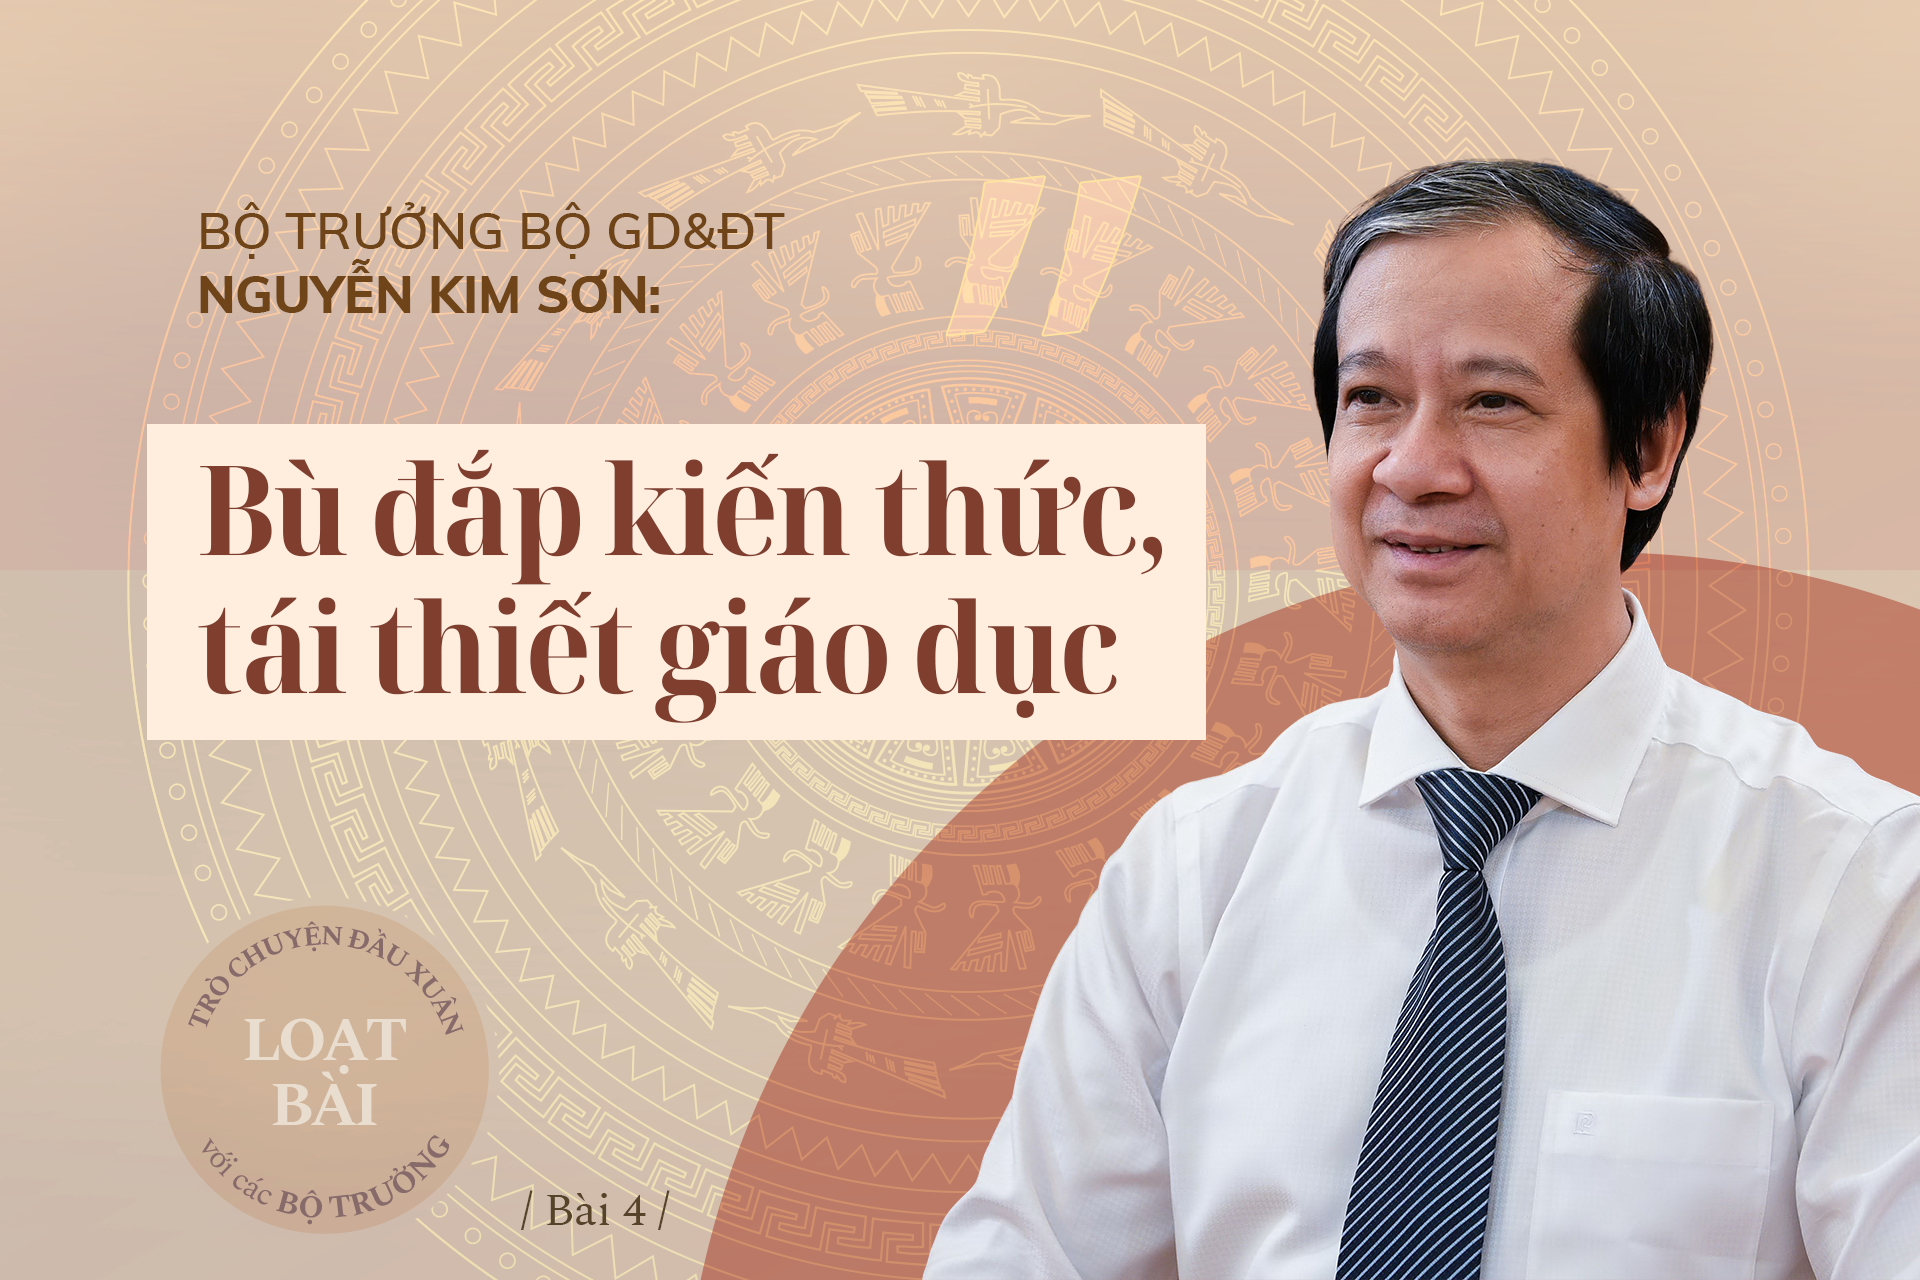 Bộ trưởng Bộ GD&ĐT Nguyễn Kim Sơn: Bù đắp kiến thức, tái thiết giáo dục